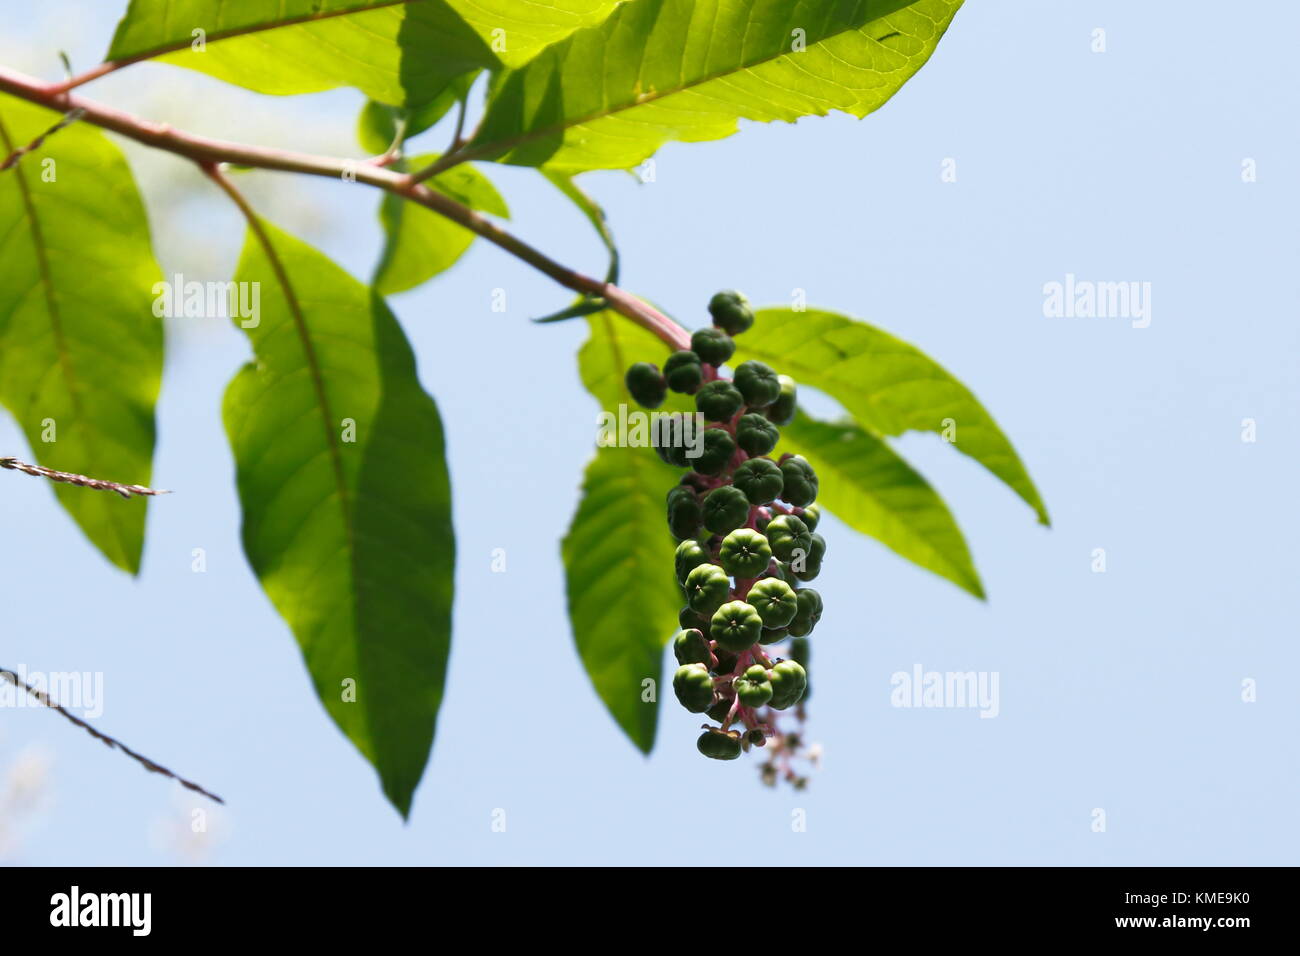 Kermesbeere mit blau schwarz farbenen Beeren Stock Photo